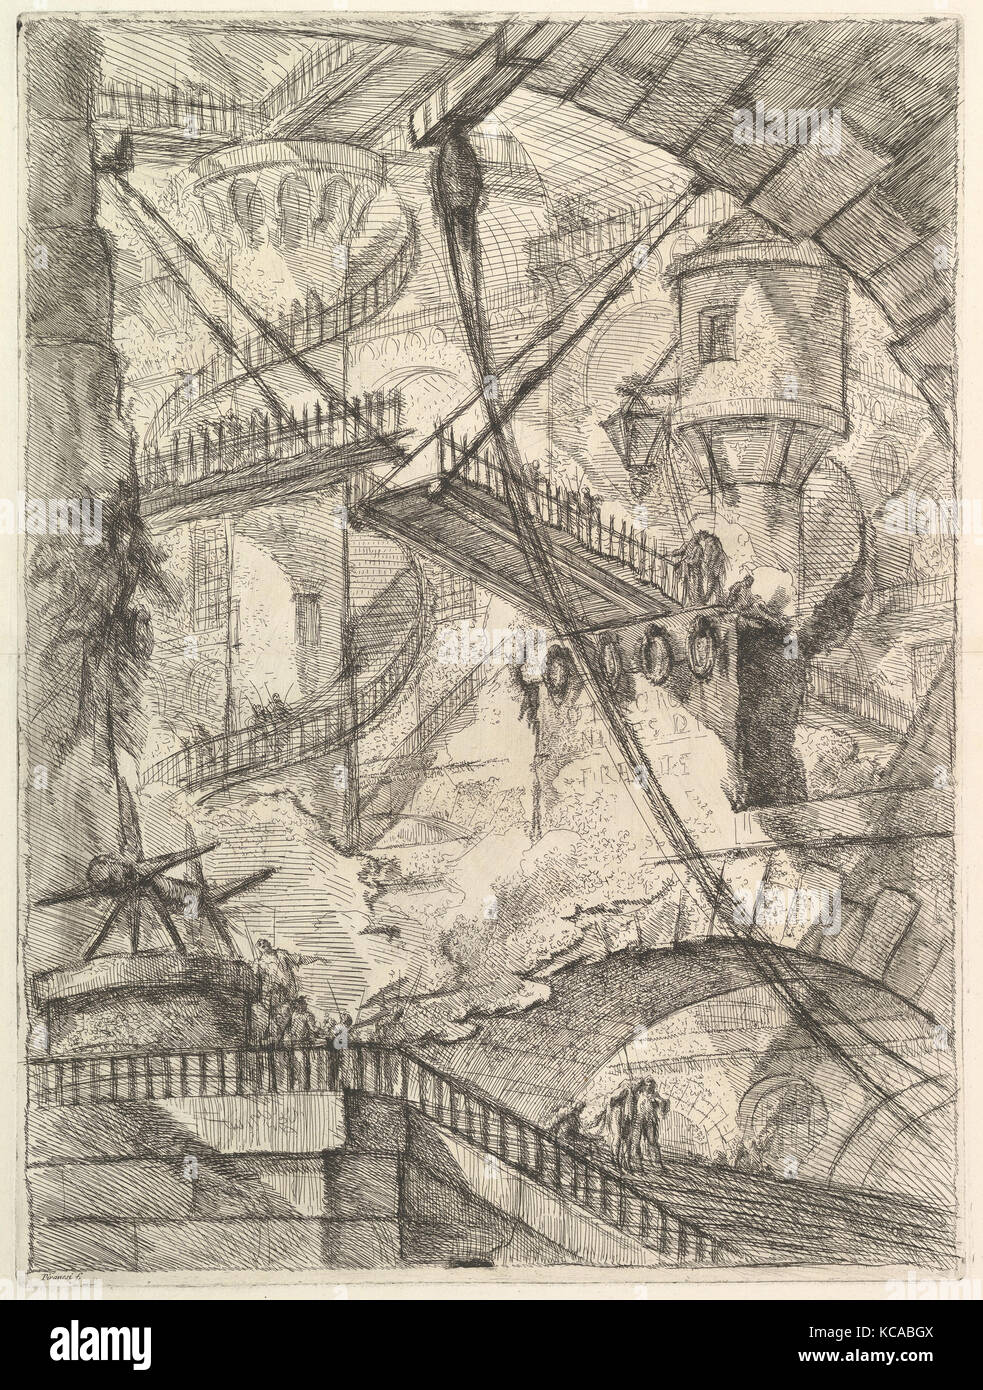 The Drawbridge, from Carceri d'invenzione (Imaginary Prisons), Giovanni Battista Piranesi, ca. 1749–50 Stock Photo